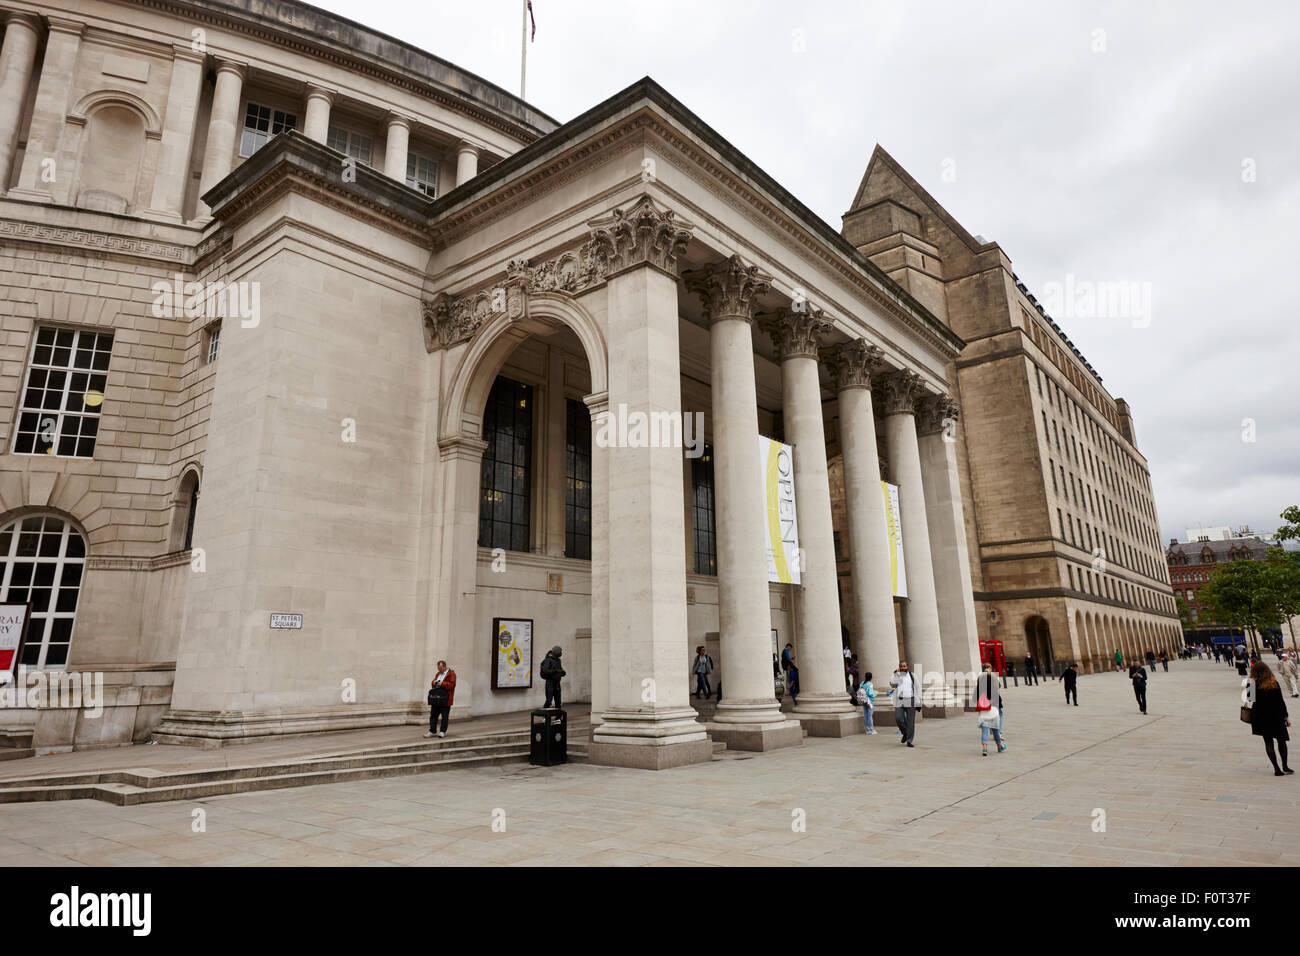 St Peters Square Biblioteca centrale di Manchester Inghilterra England Regno Unito Foto Stock